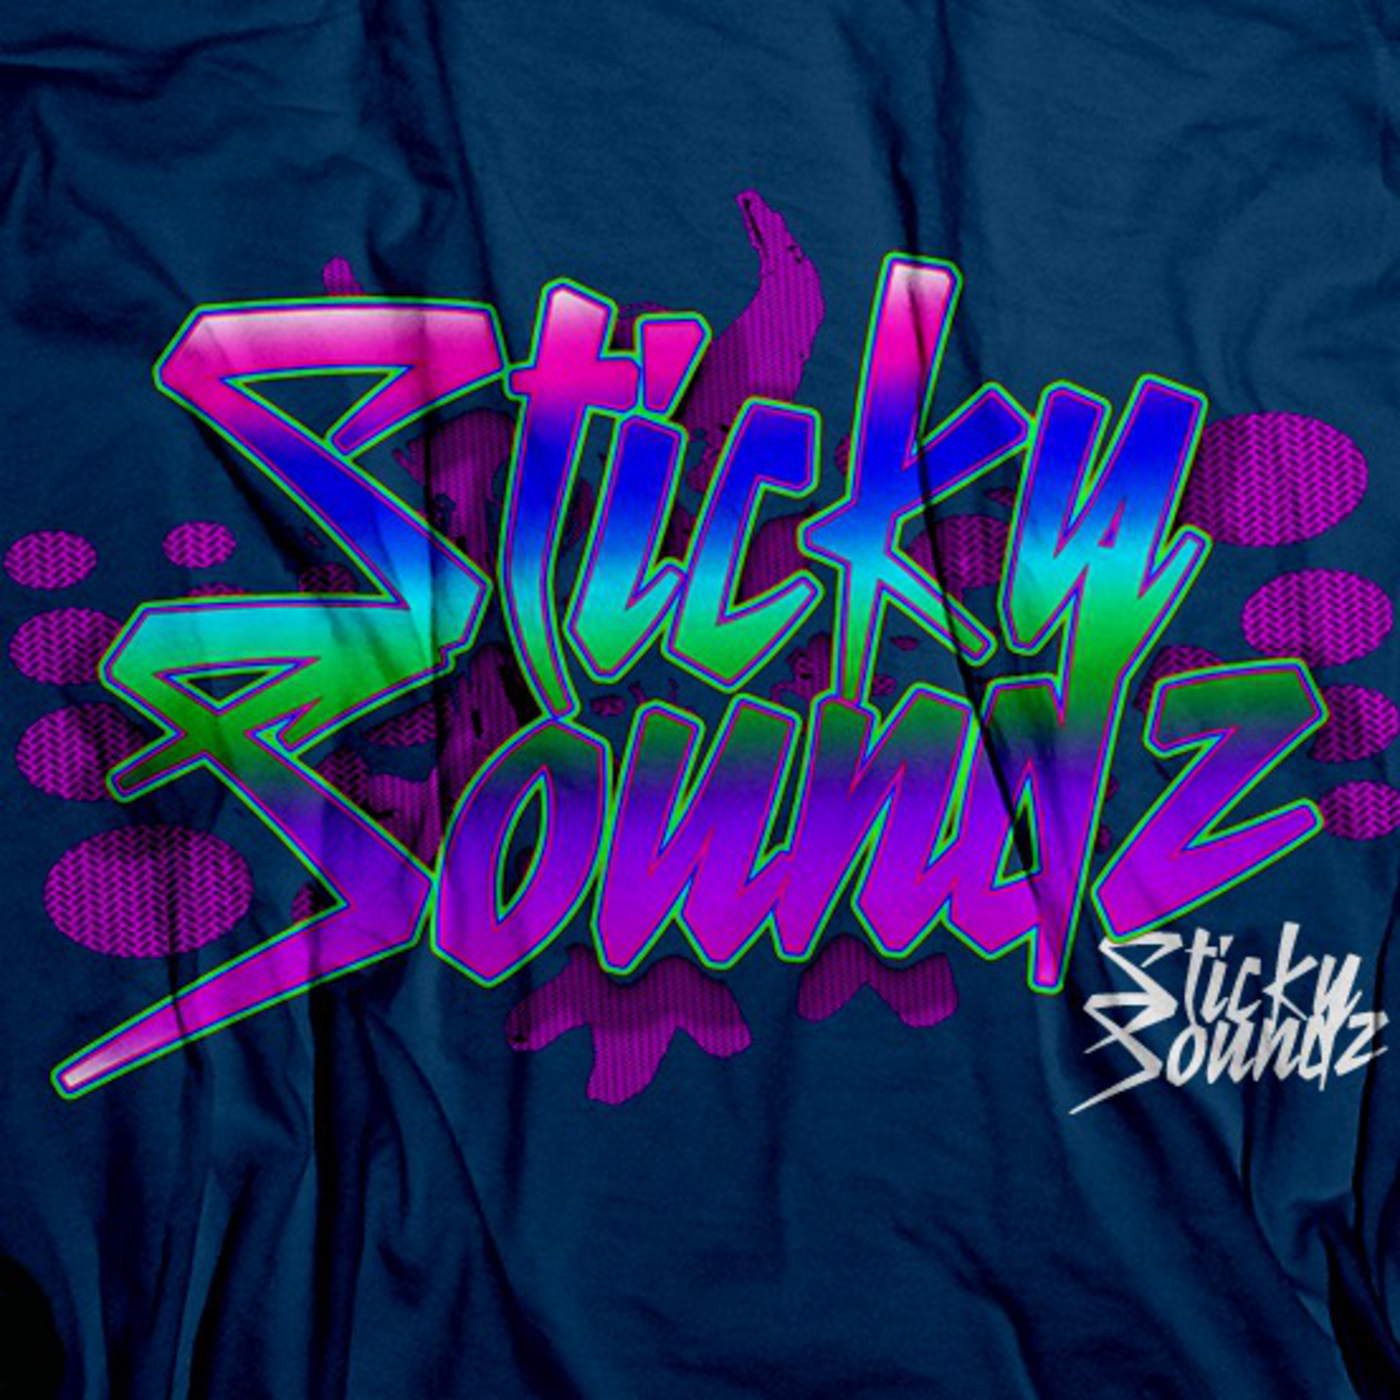 Shock By StickySoundz